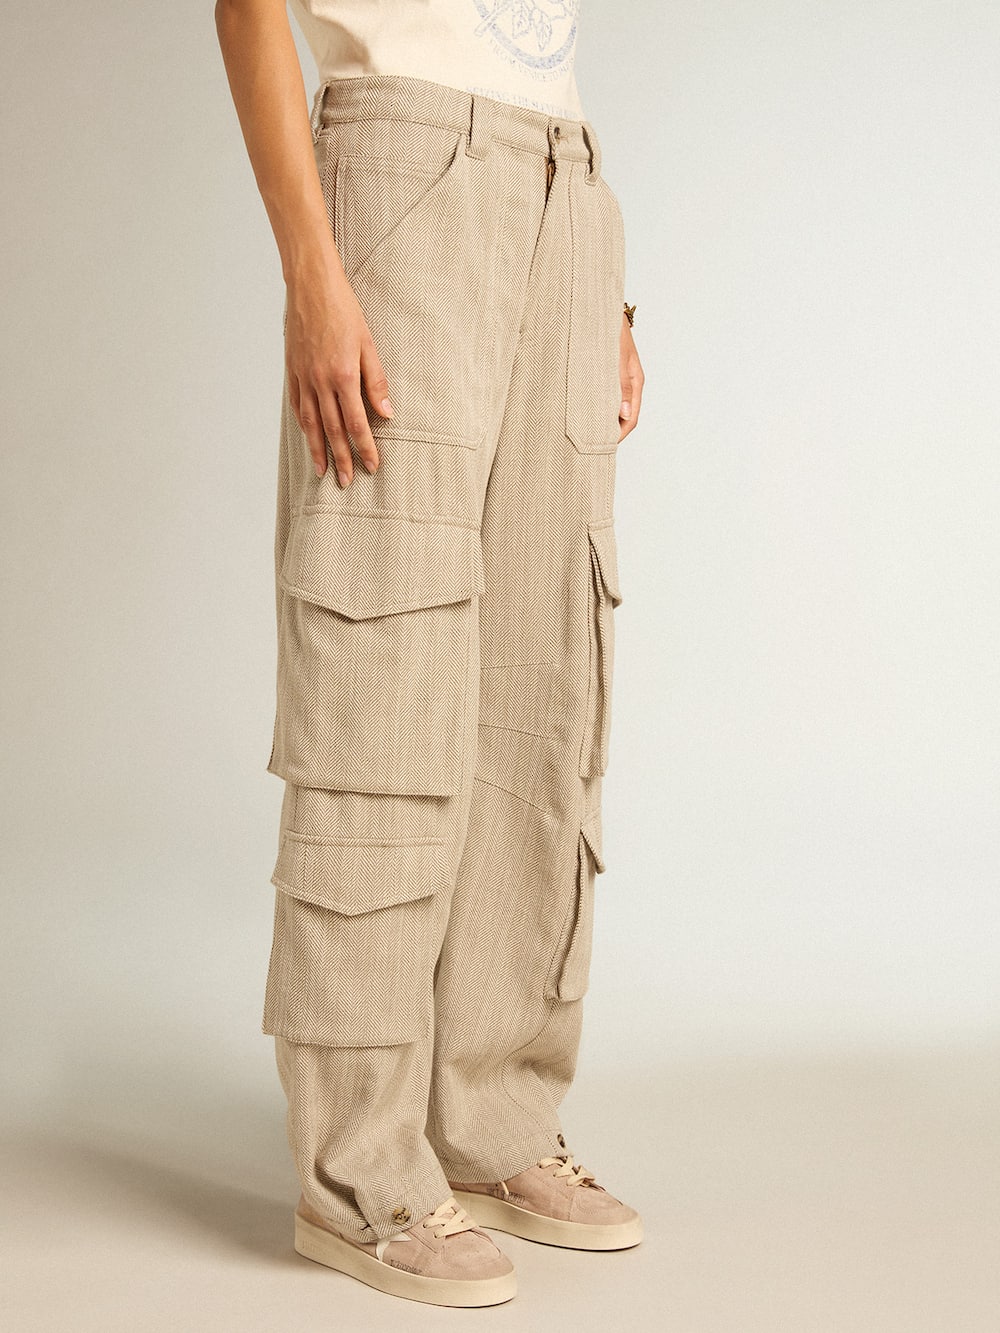 Golden Goose - Pantalone cargo da donna in cotone disegno herringbone color oliva scuro in 